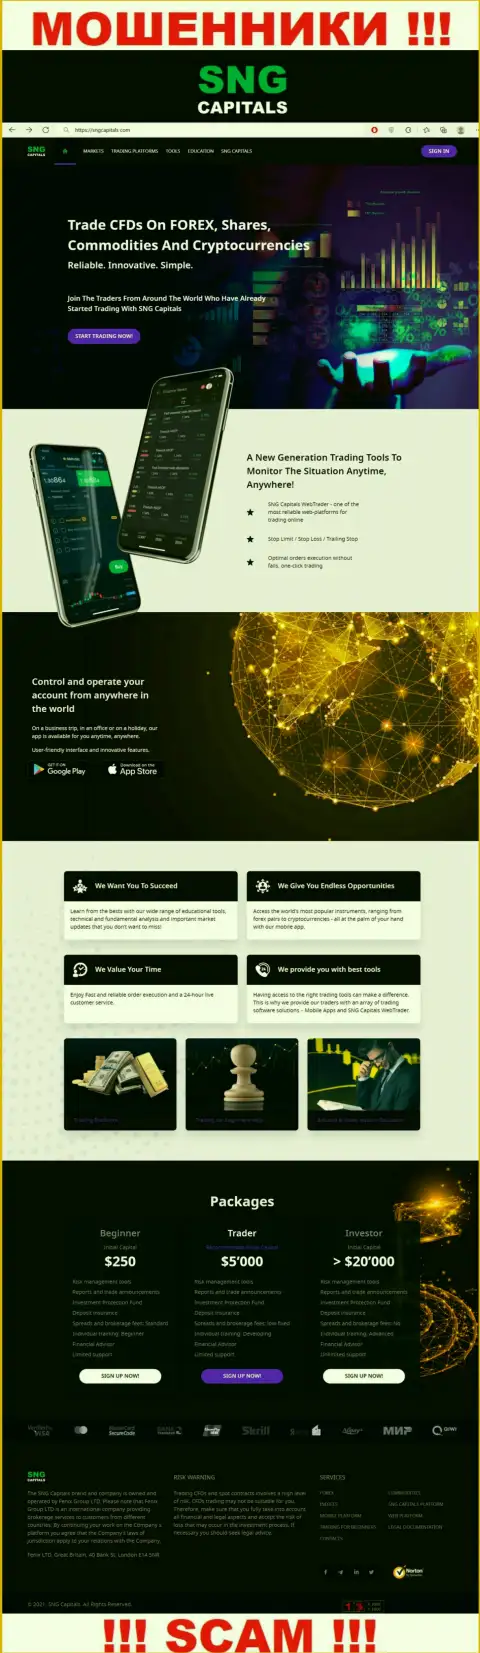 СТОП !!! Официальный веб-сайт Fenix Group LTD настоящая ловушка для клиентов